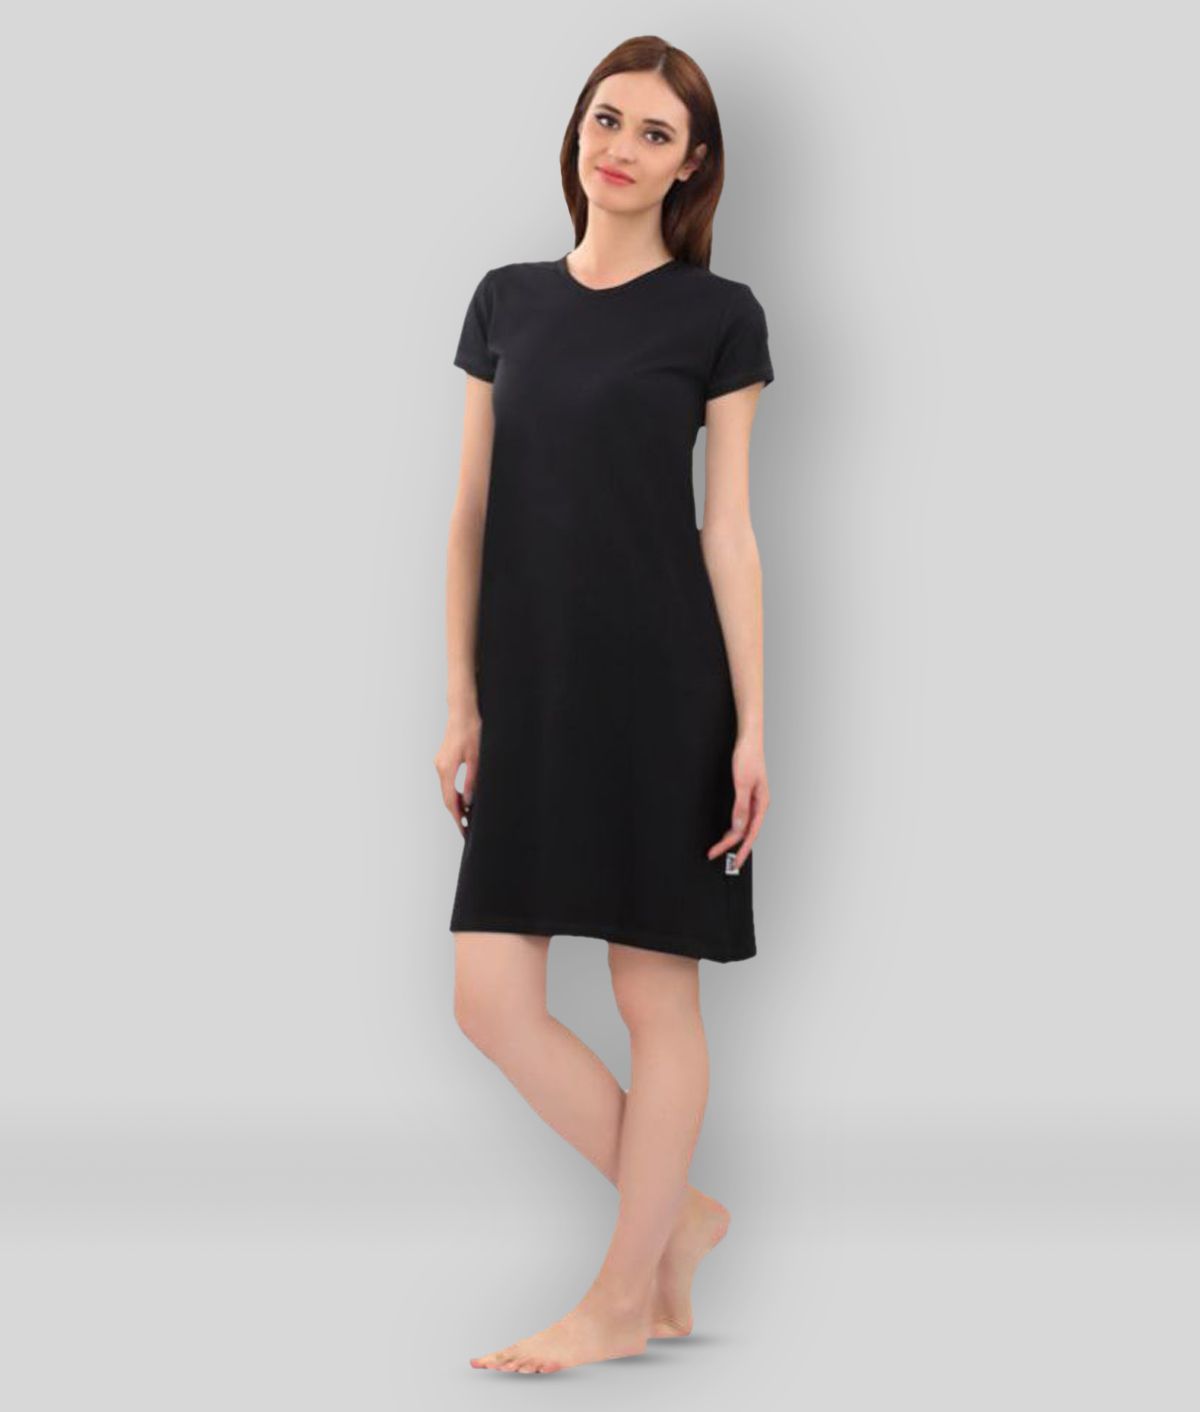     			Zebu - Black Cotton Women's Nightwear Night Dress